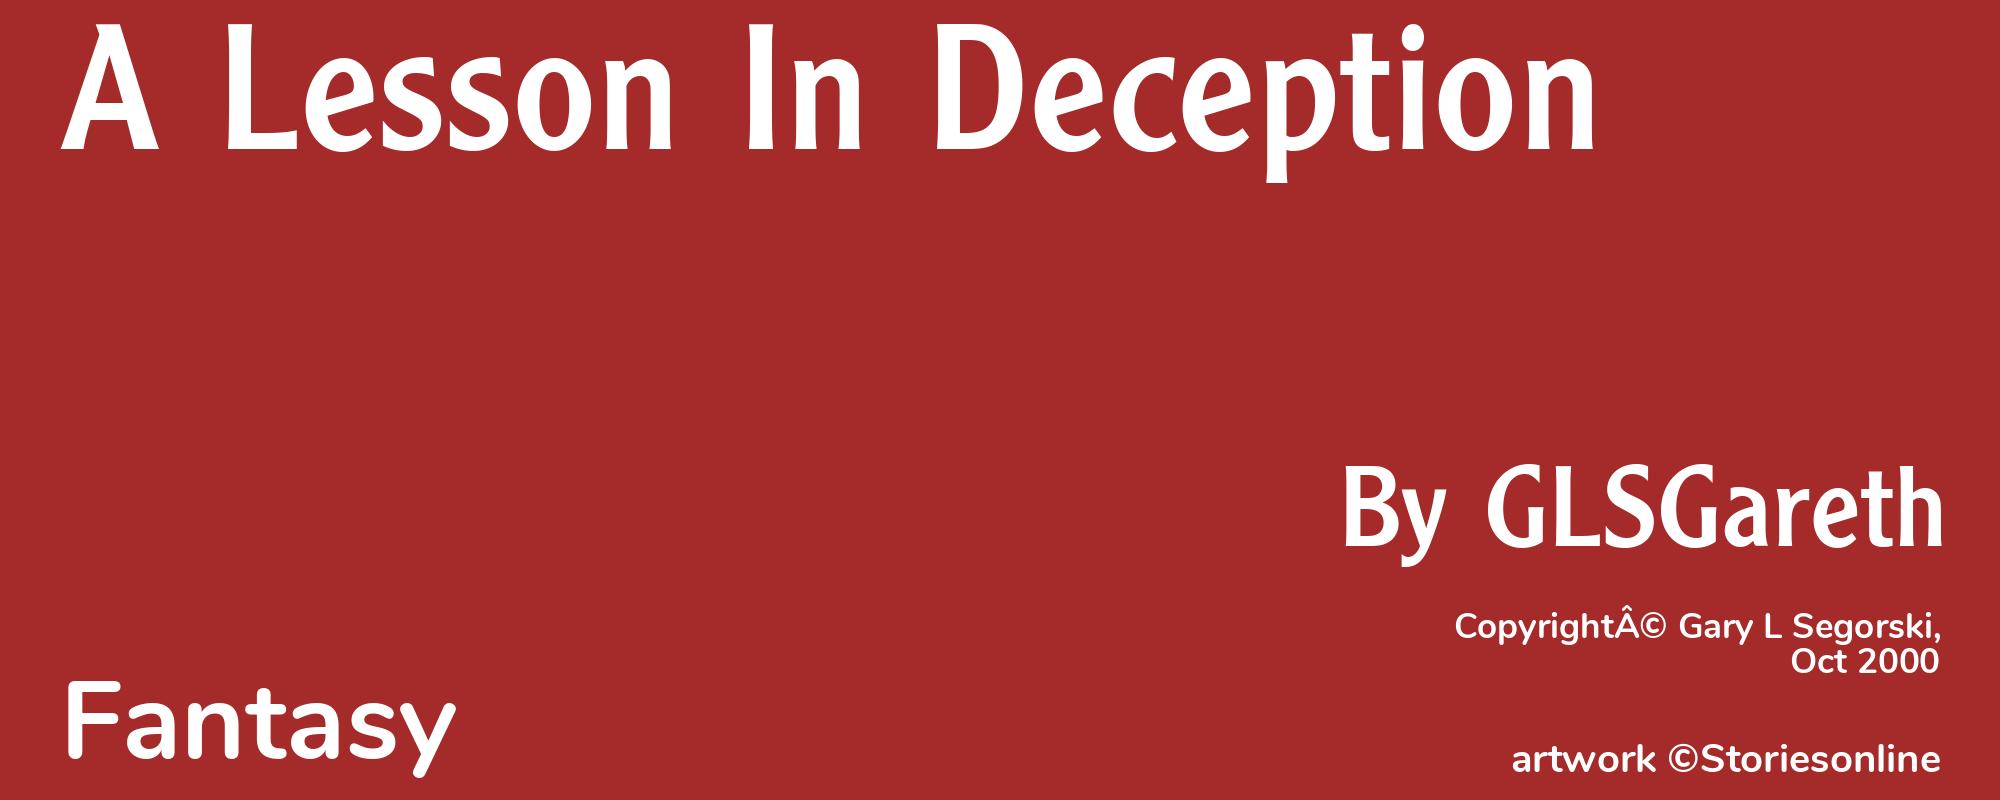 A Lesson In Deception - Cover